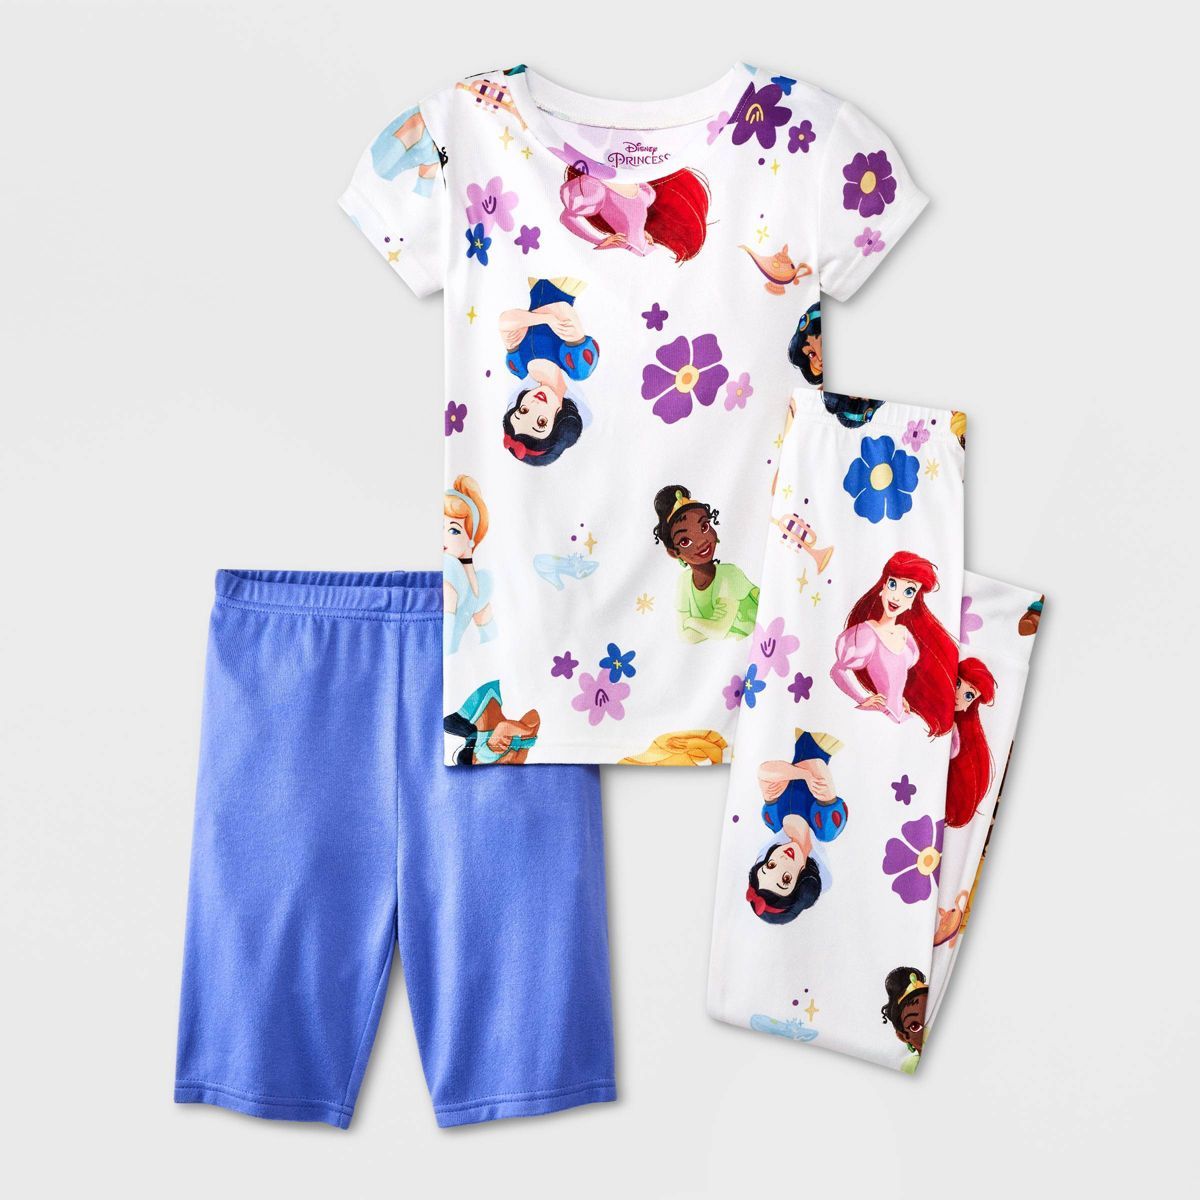 Girls' Disney Princess 3pc Pajama Set - White/Purple | Target